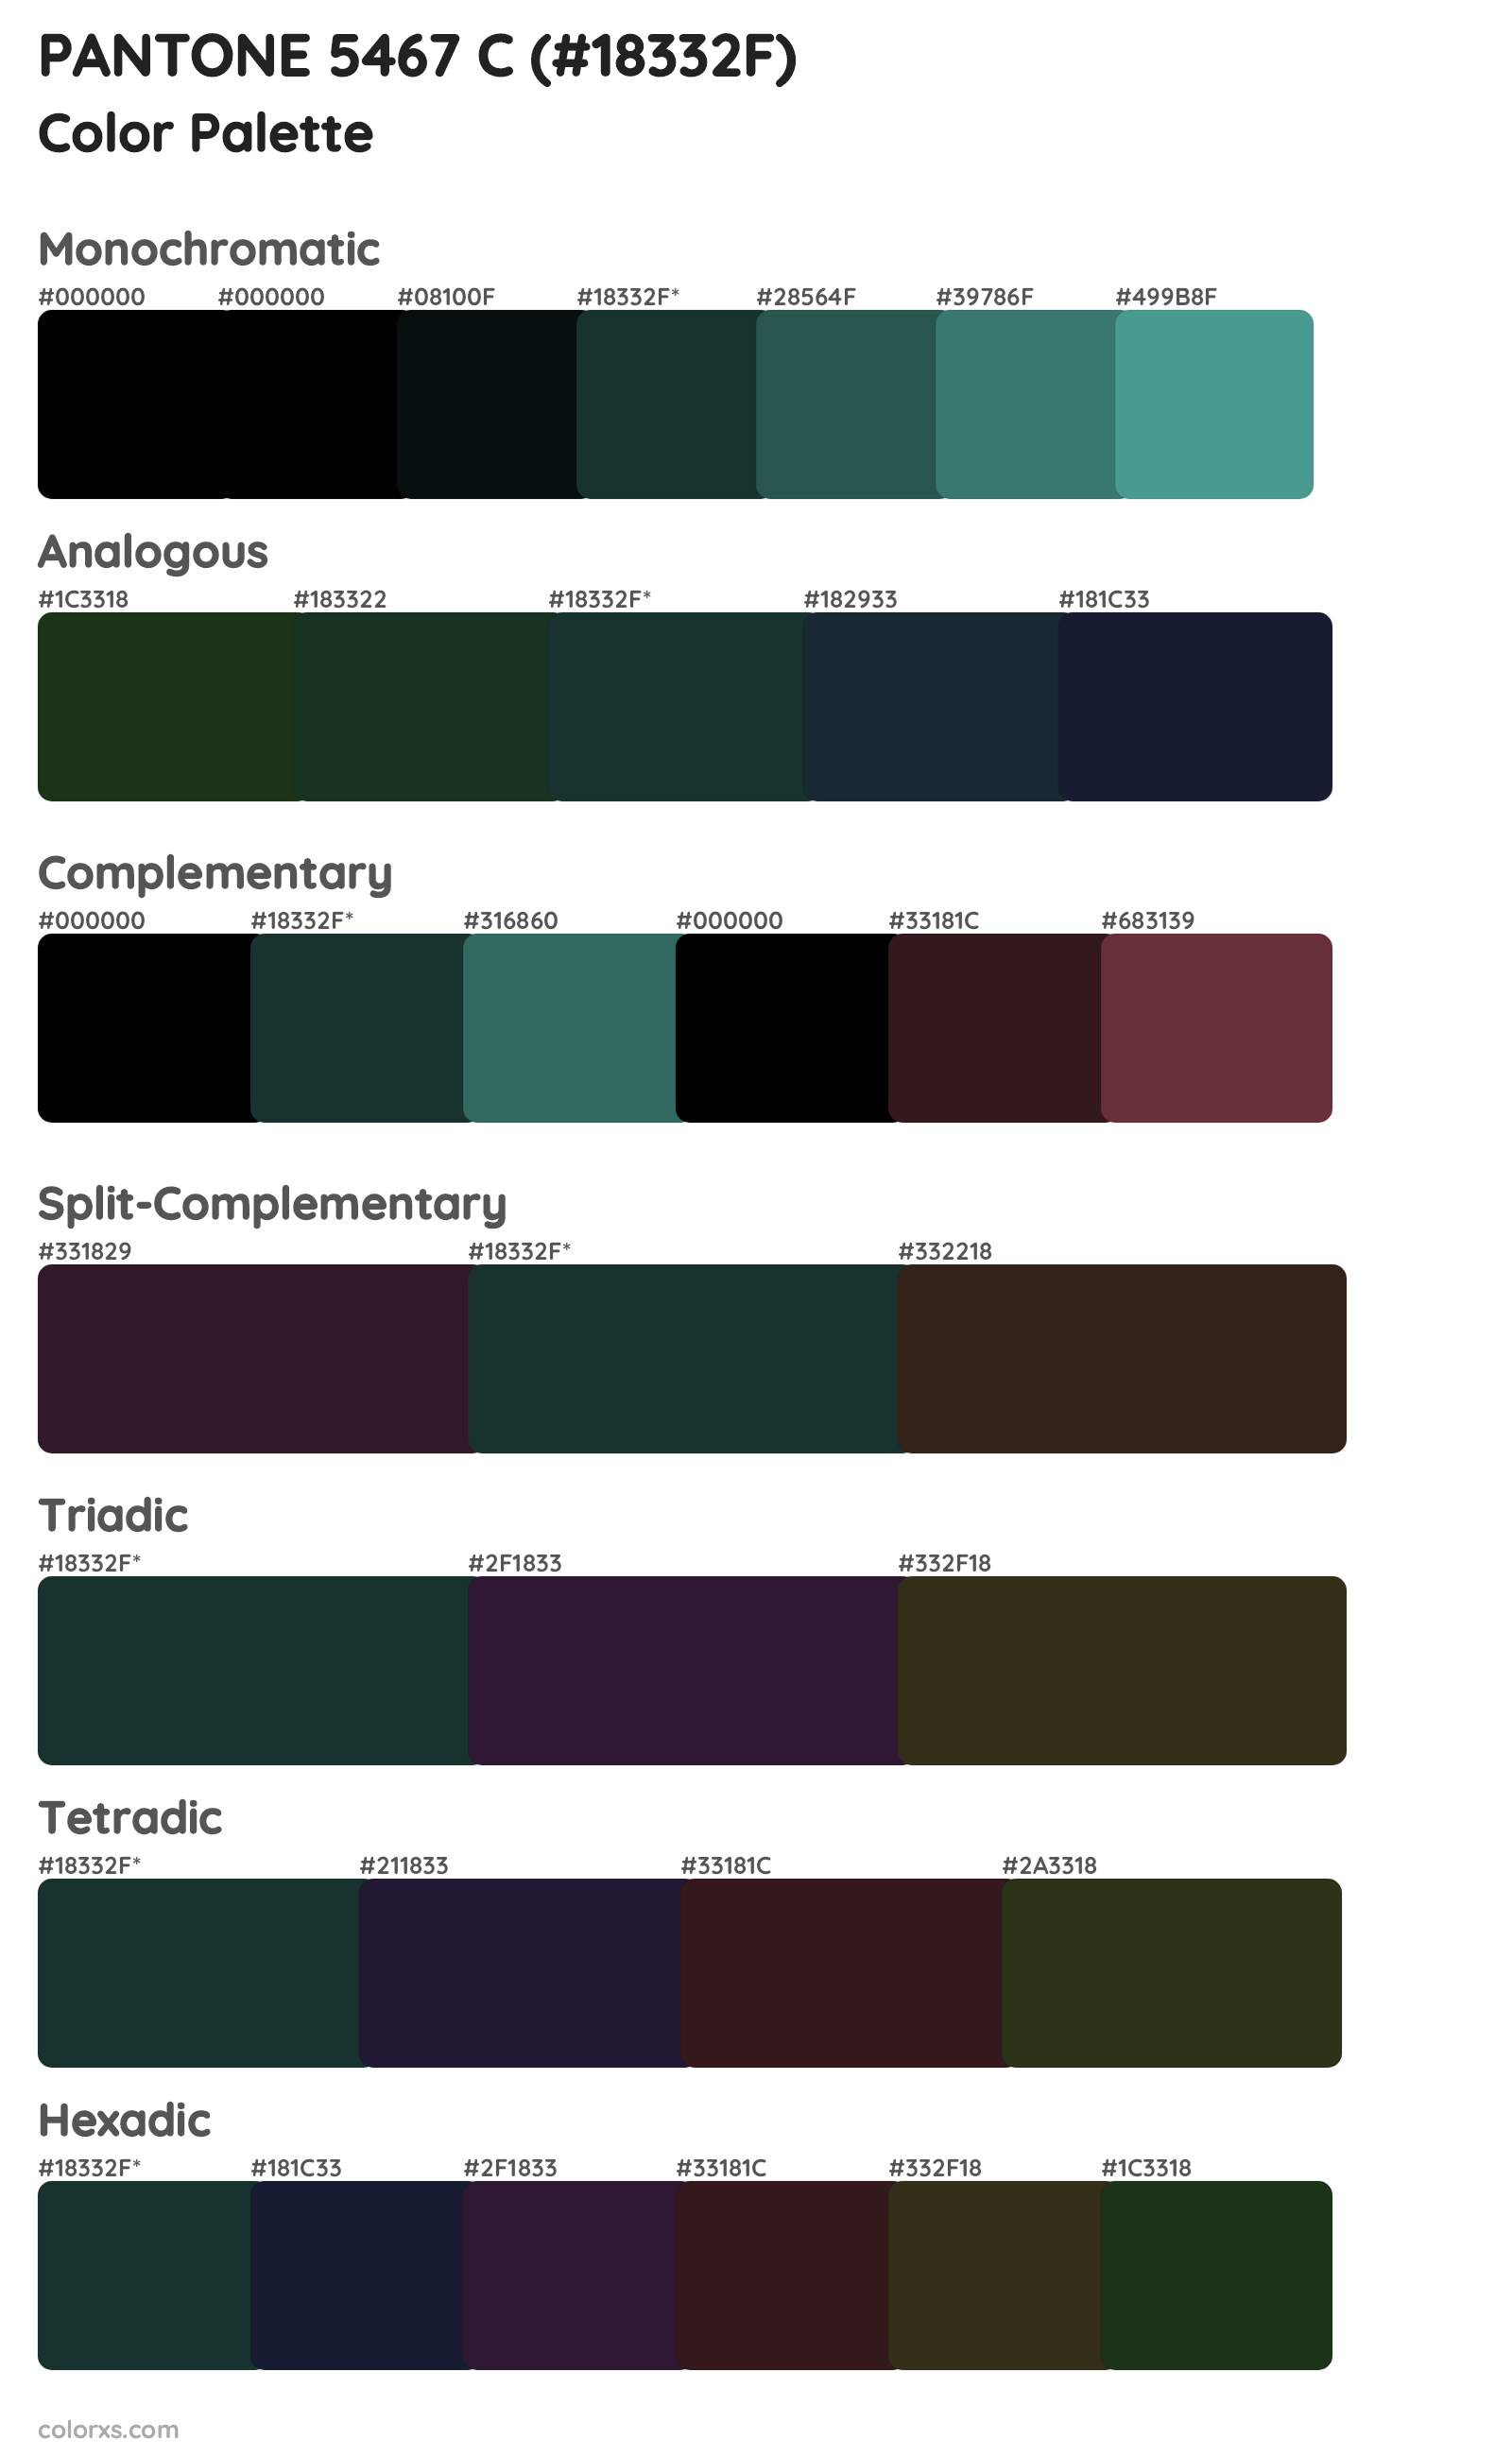 PANTONE 5467 C Color Scheme Palettes